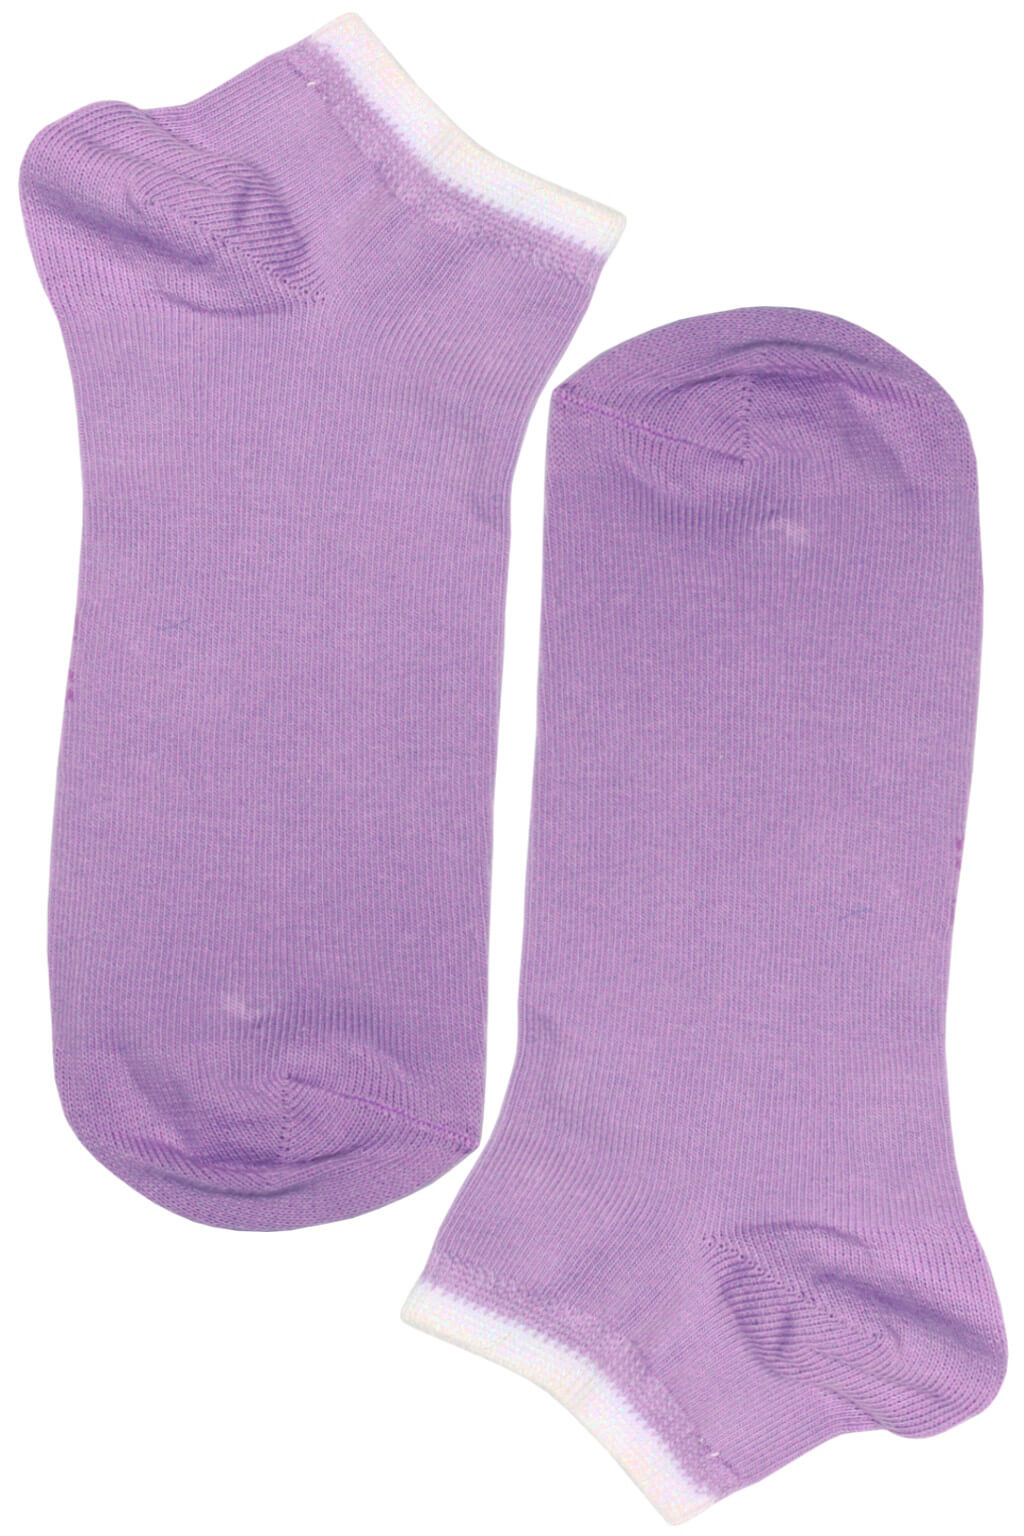 Bellinda ponožky - bavlněné dámské kotníčkové 35-38 světle fialová